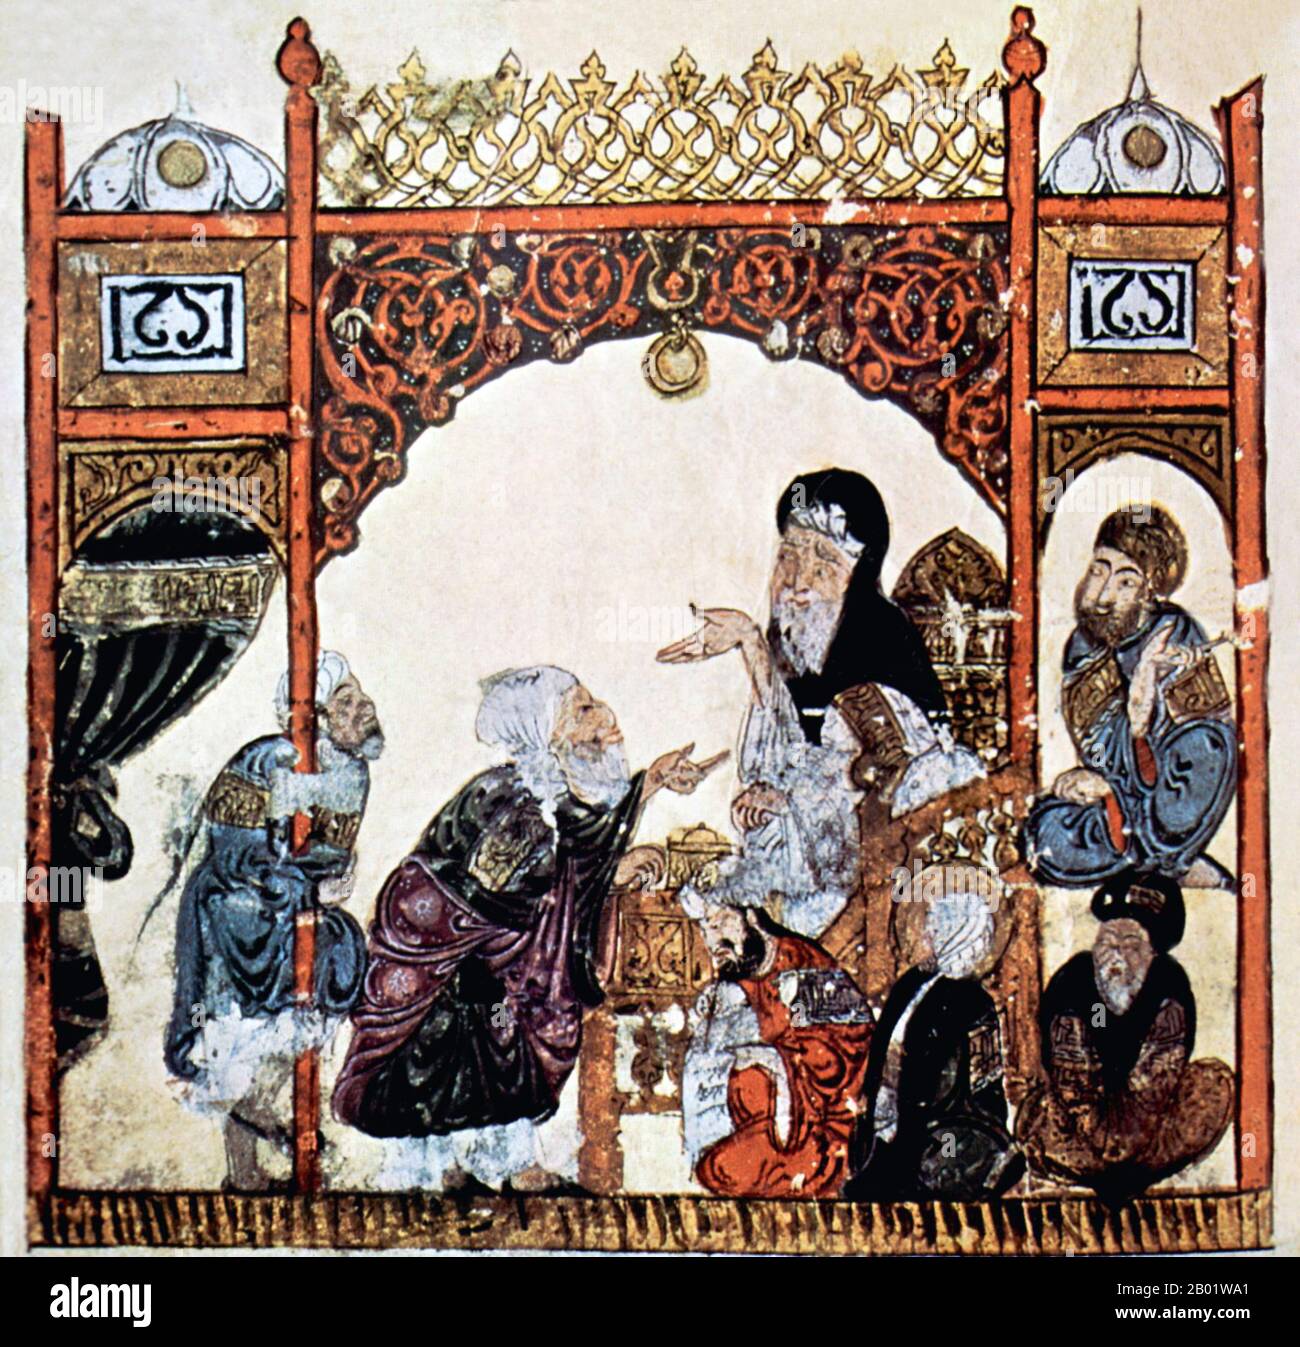 Iraq: Abu Zayd chiede di essere preso a bordo della nave. Pittura in miniatura dal 'Maqam' o 'Assemblea' di al-Hariri di Bassora, c. 1225-1235. Le Maqāma (letteralmente "assemblee") sono un genere letterario arabo (originariamente) di prosa rima con intervalli di poesia in cui la stravaganza retorica è evidente. Si dice che l'autore del X secolo Badī al-Zaman al-Hamadhāni abbia inventato la forma, che fu estesa da al-Hariri di Bassora nel secolo successivo. Entrambi gli autori maqāmāt si concentrano su figure ingannevoli le cui peregrinazioni e le cui gesta nel parlare alle assemblee dei potenti sono trasmesse da un narratore. Foto Stock